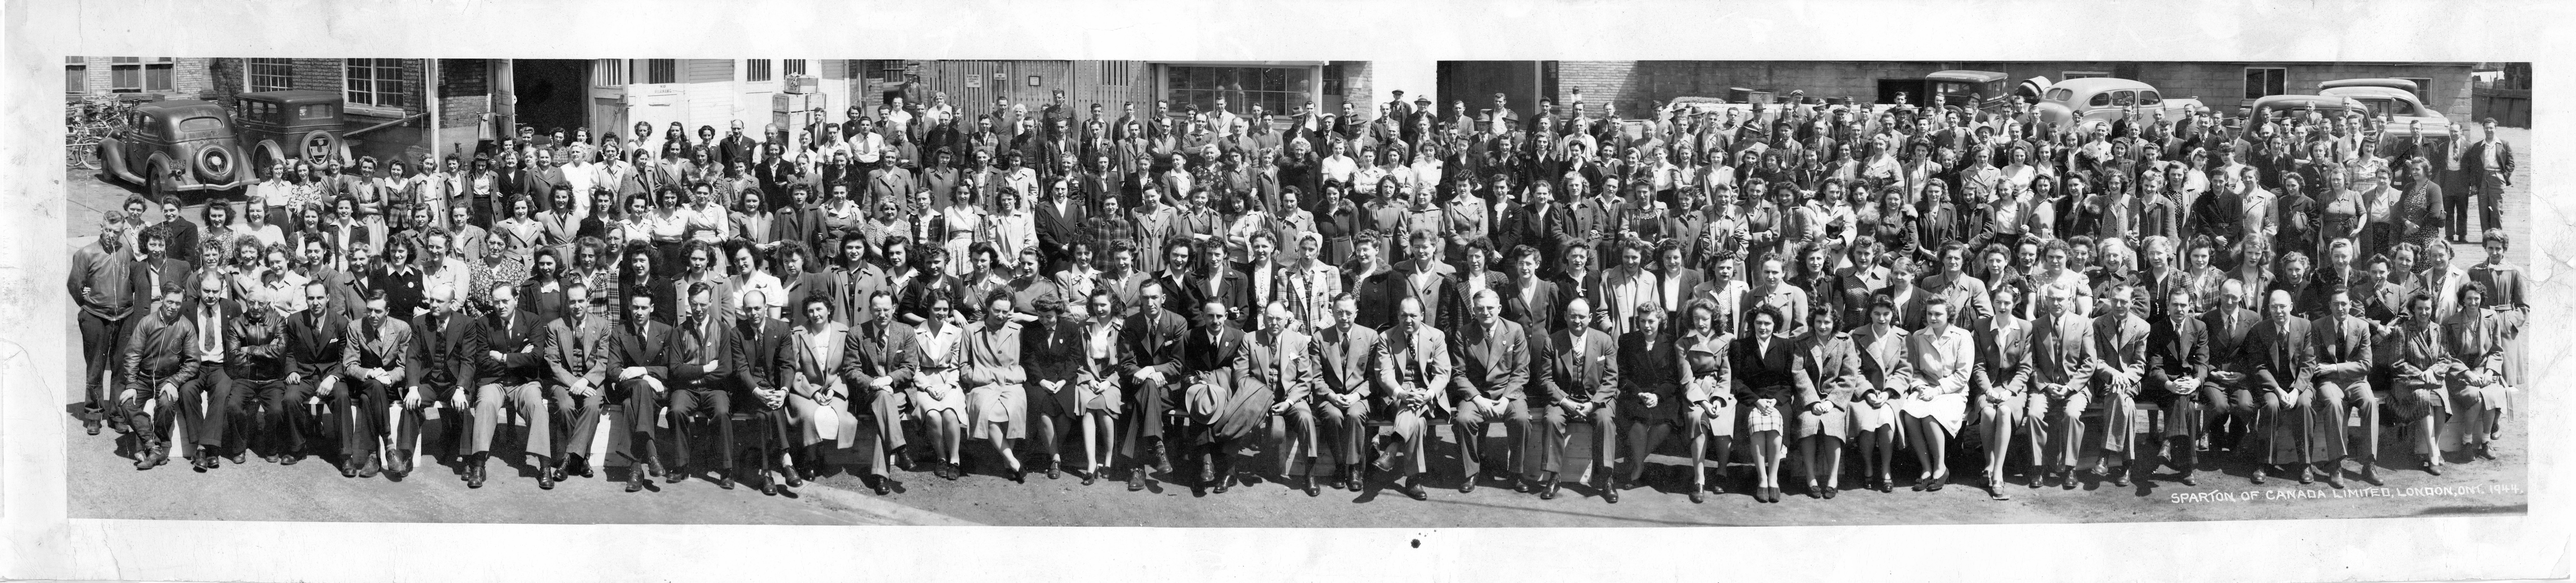 Photo de groupe panoramique en noir et blanc, principalement de femmes. Le texte dit : « Sparton of Canada, London, Ont., 1944 ».